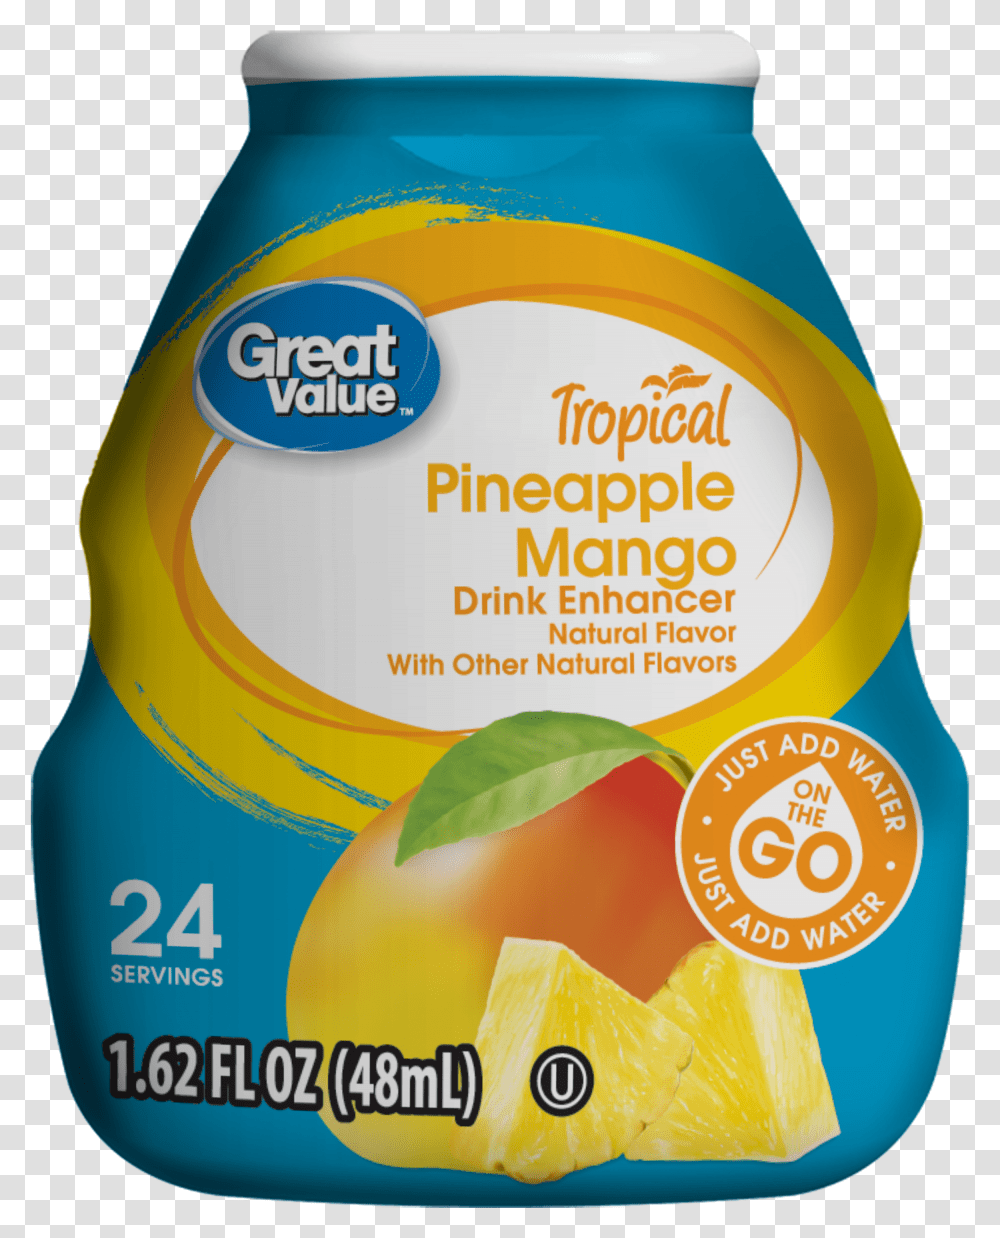 Great Value Tropical Drink Enhancer Pineapple Mango Fruit, Label, Bottle, Plant Transparent Png